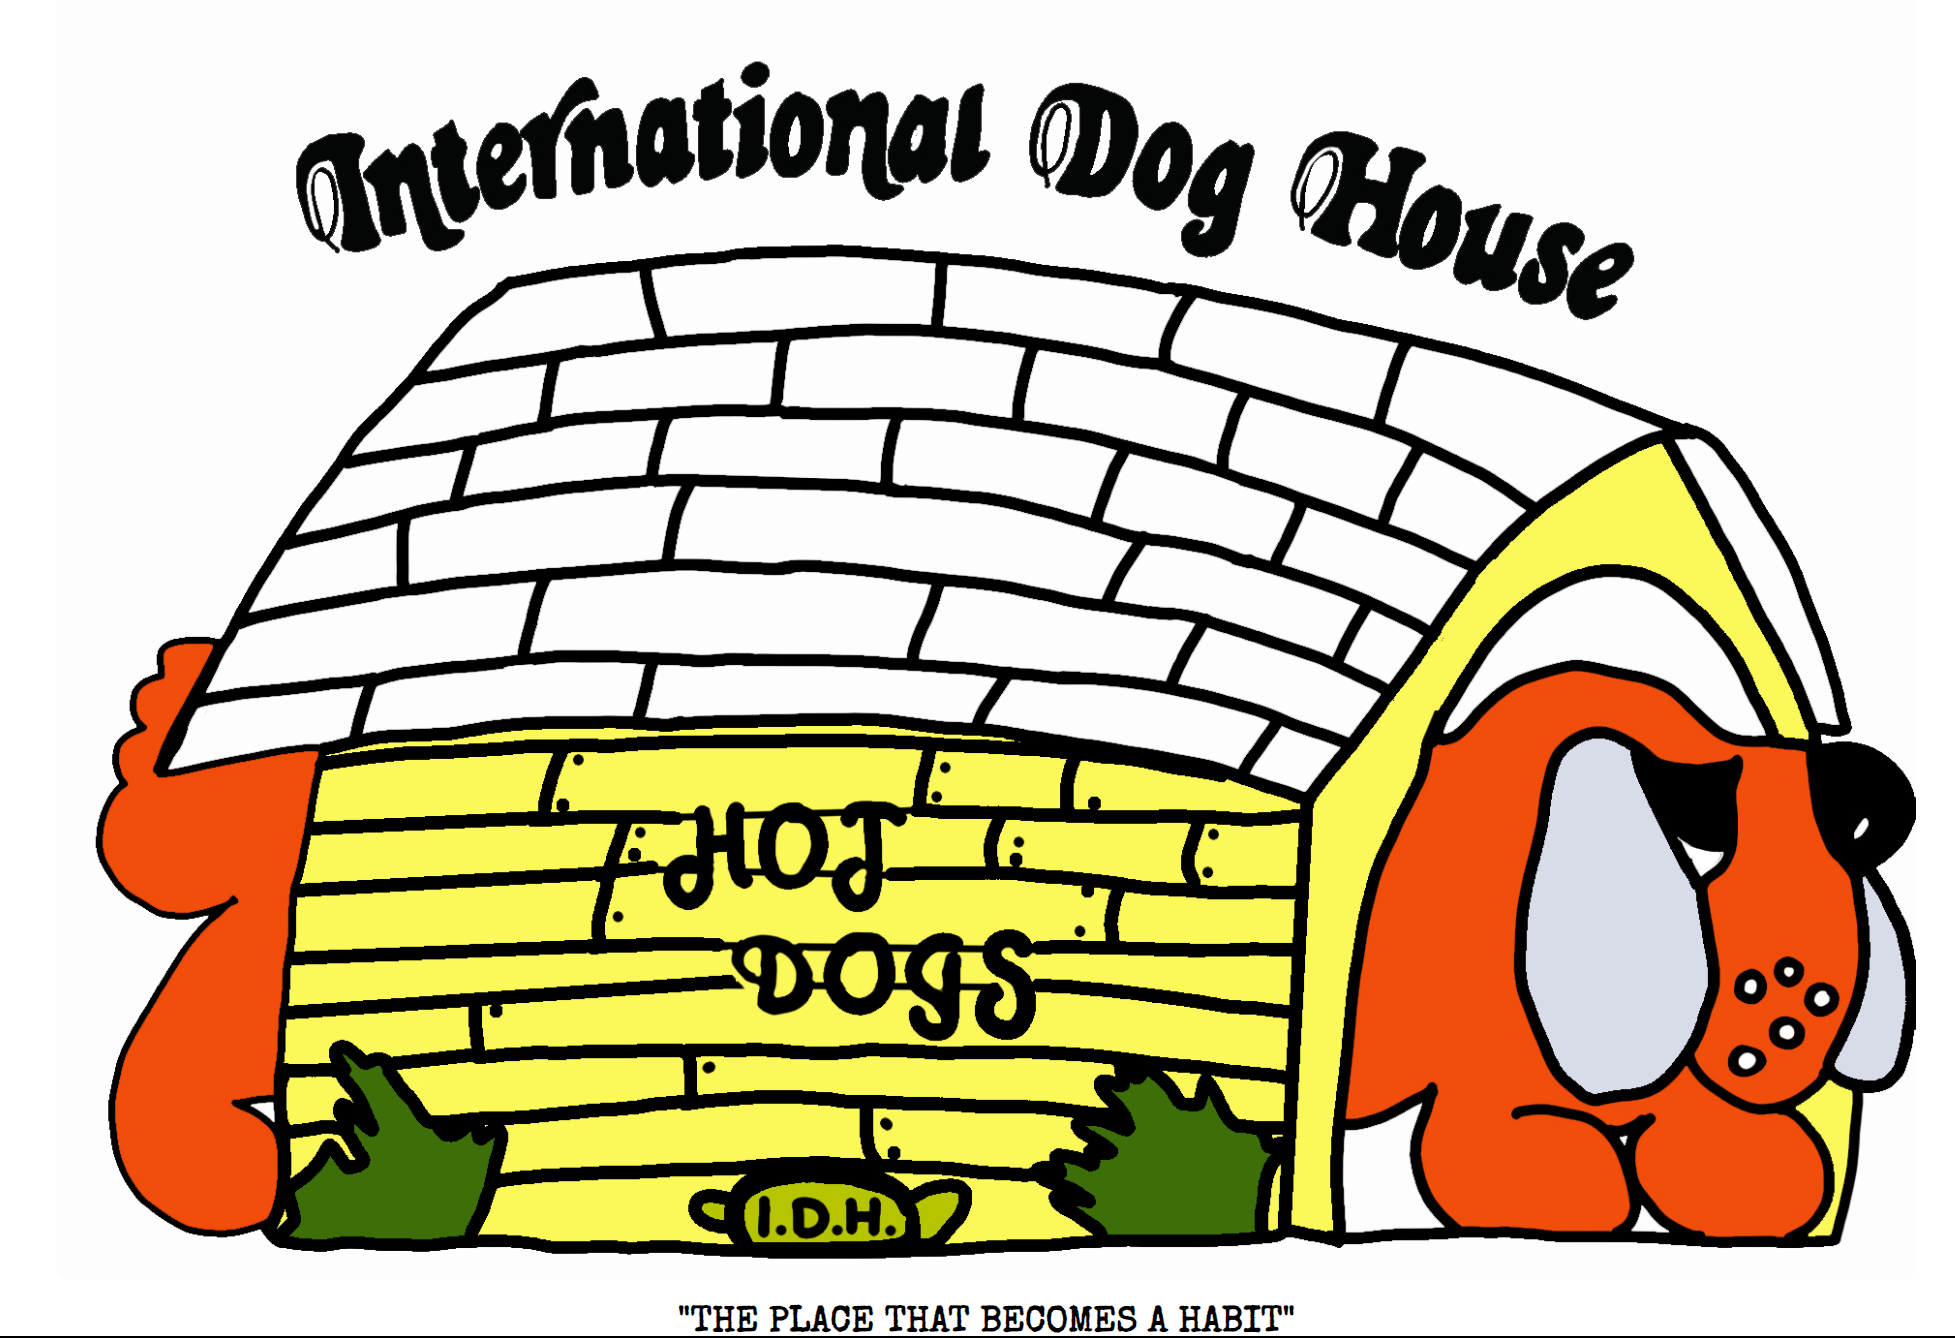 International Dog House